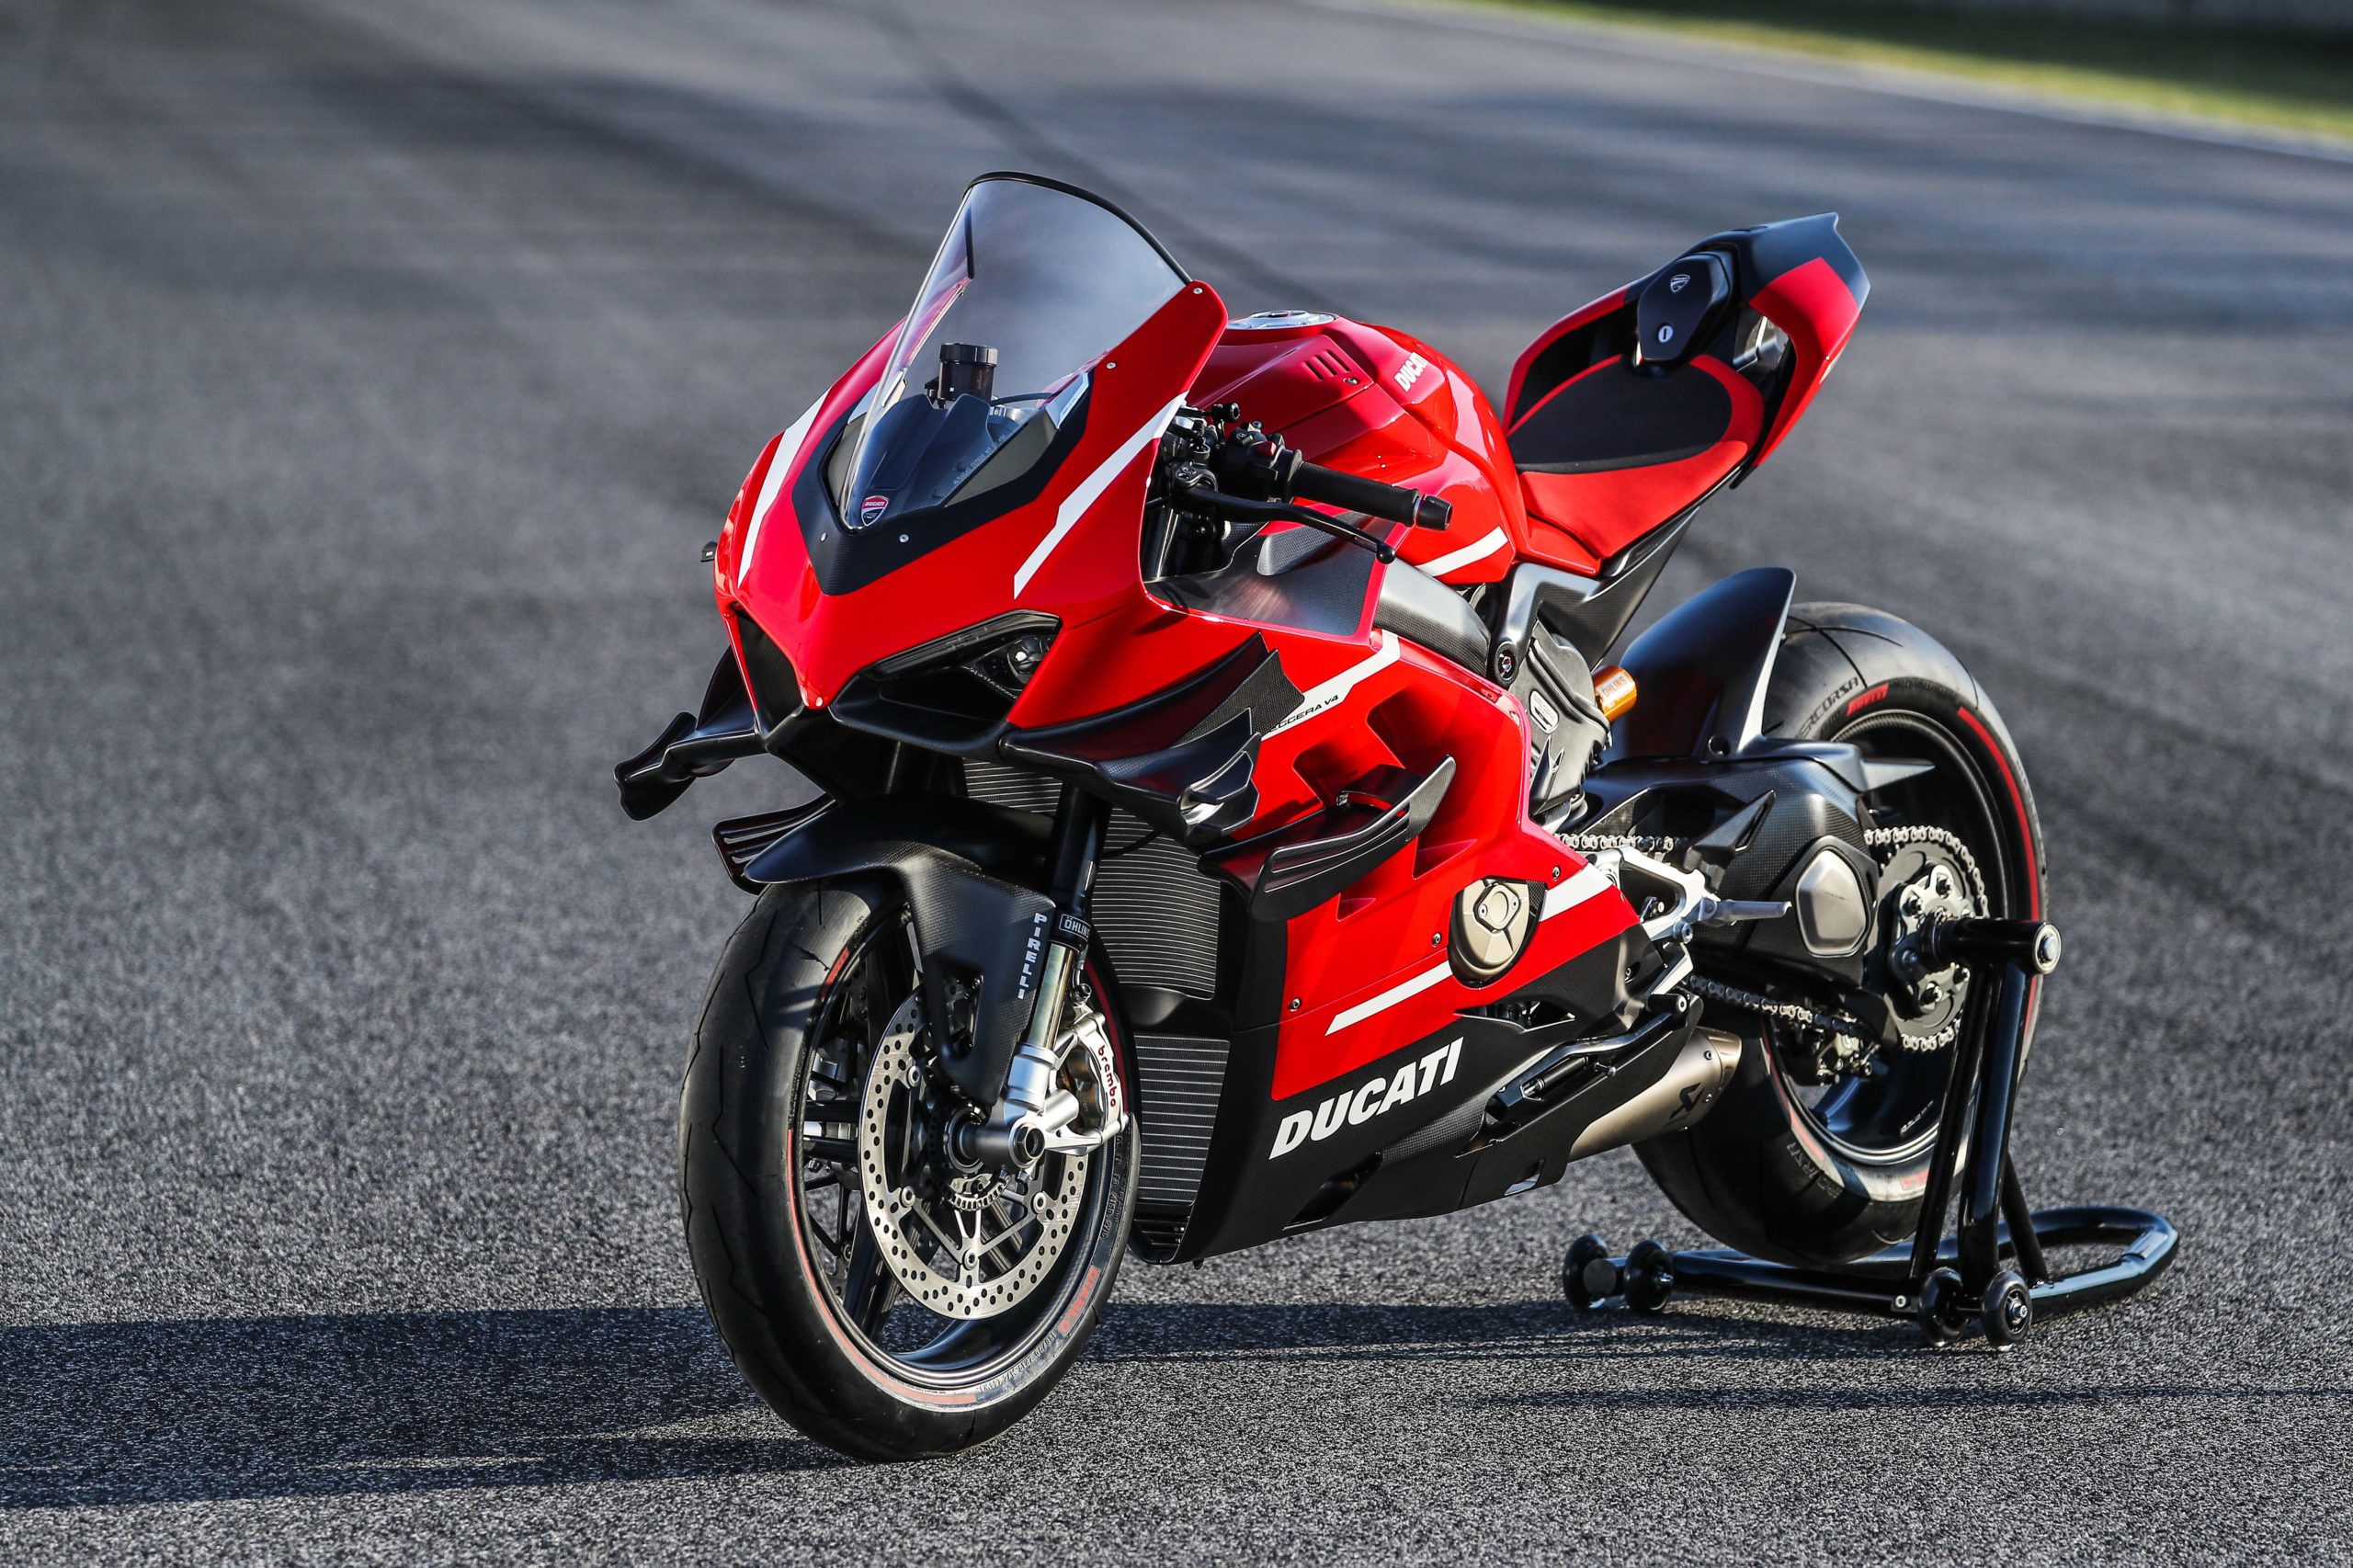 Ducati Superleggera V4 4k Wallpaper 2020 Superbikes Bikes 1575